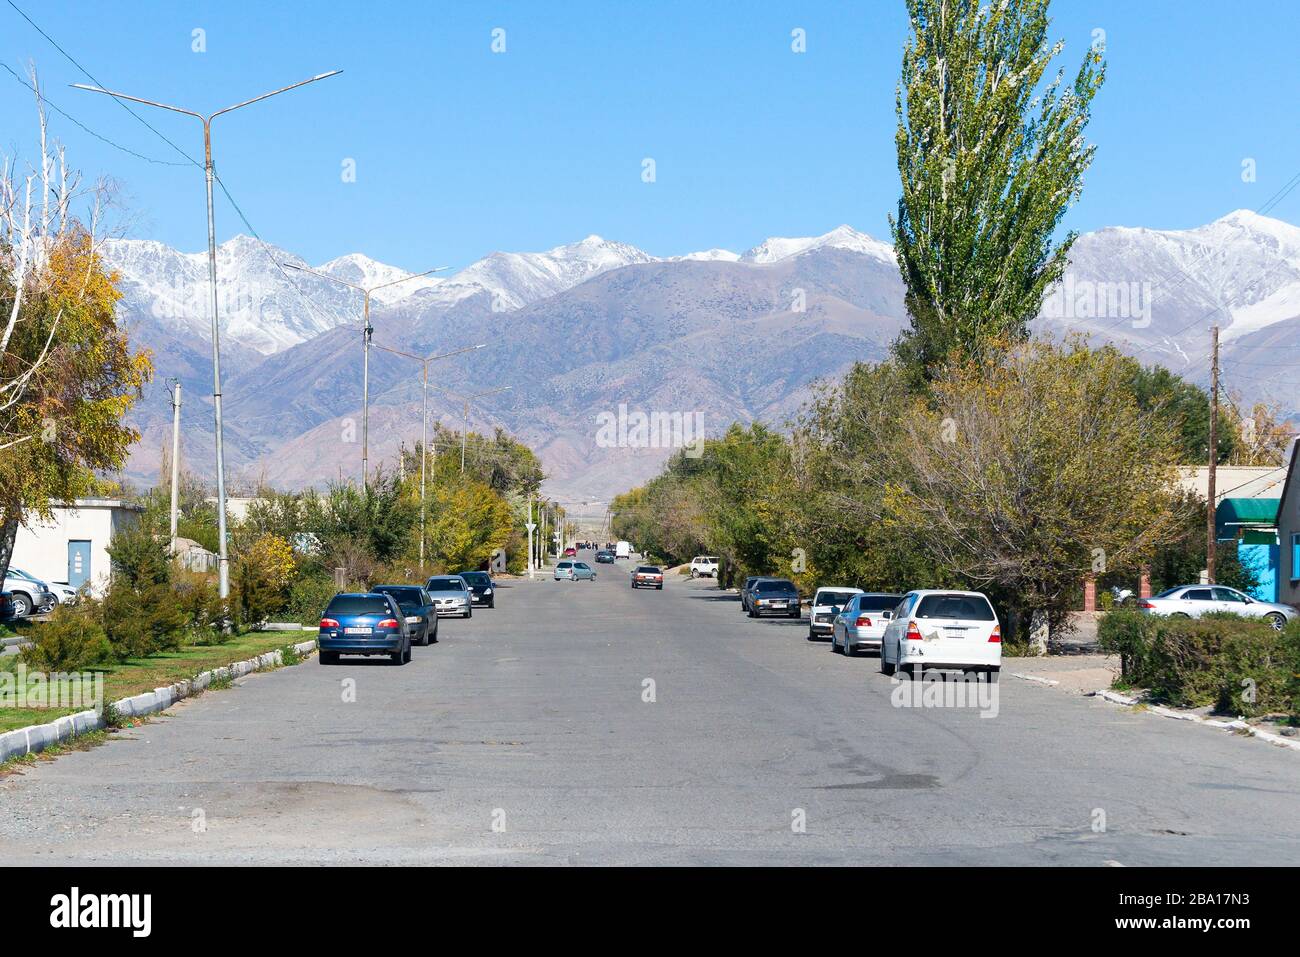 Strada asfaltata con auto parcheggiate in una piccola città vicino al lago Issyk Kul. Montagne ricoperte di neve e alberi visibili a Balykchy, Kirghizistan. Foto Stock